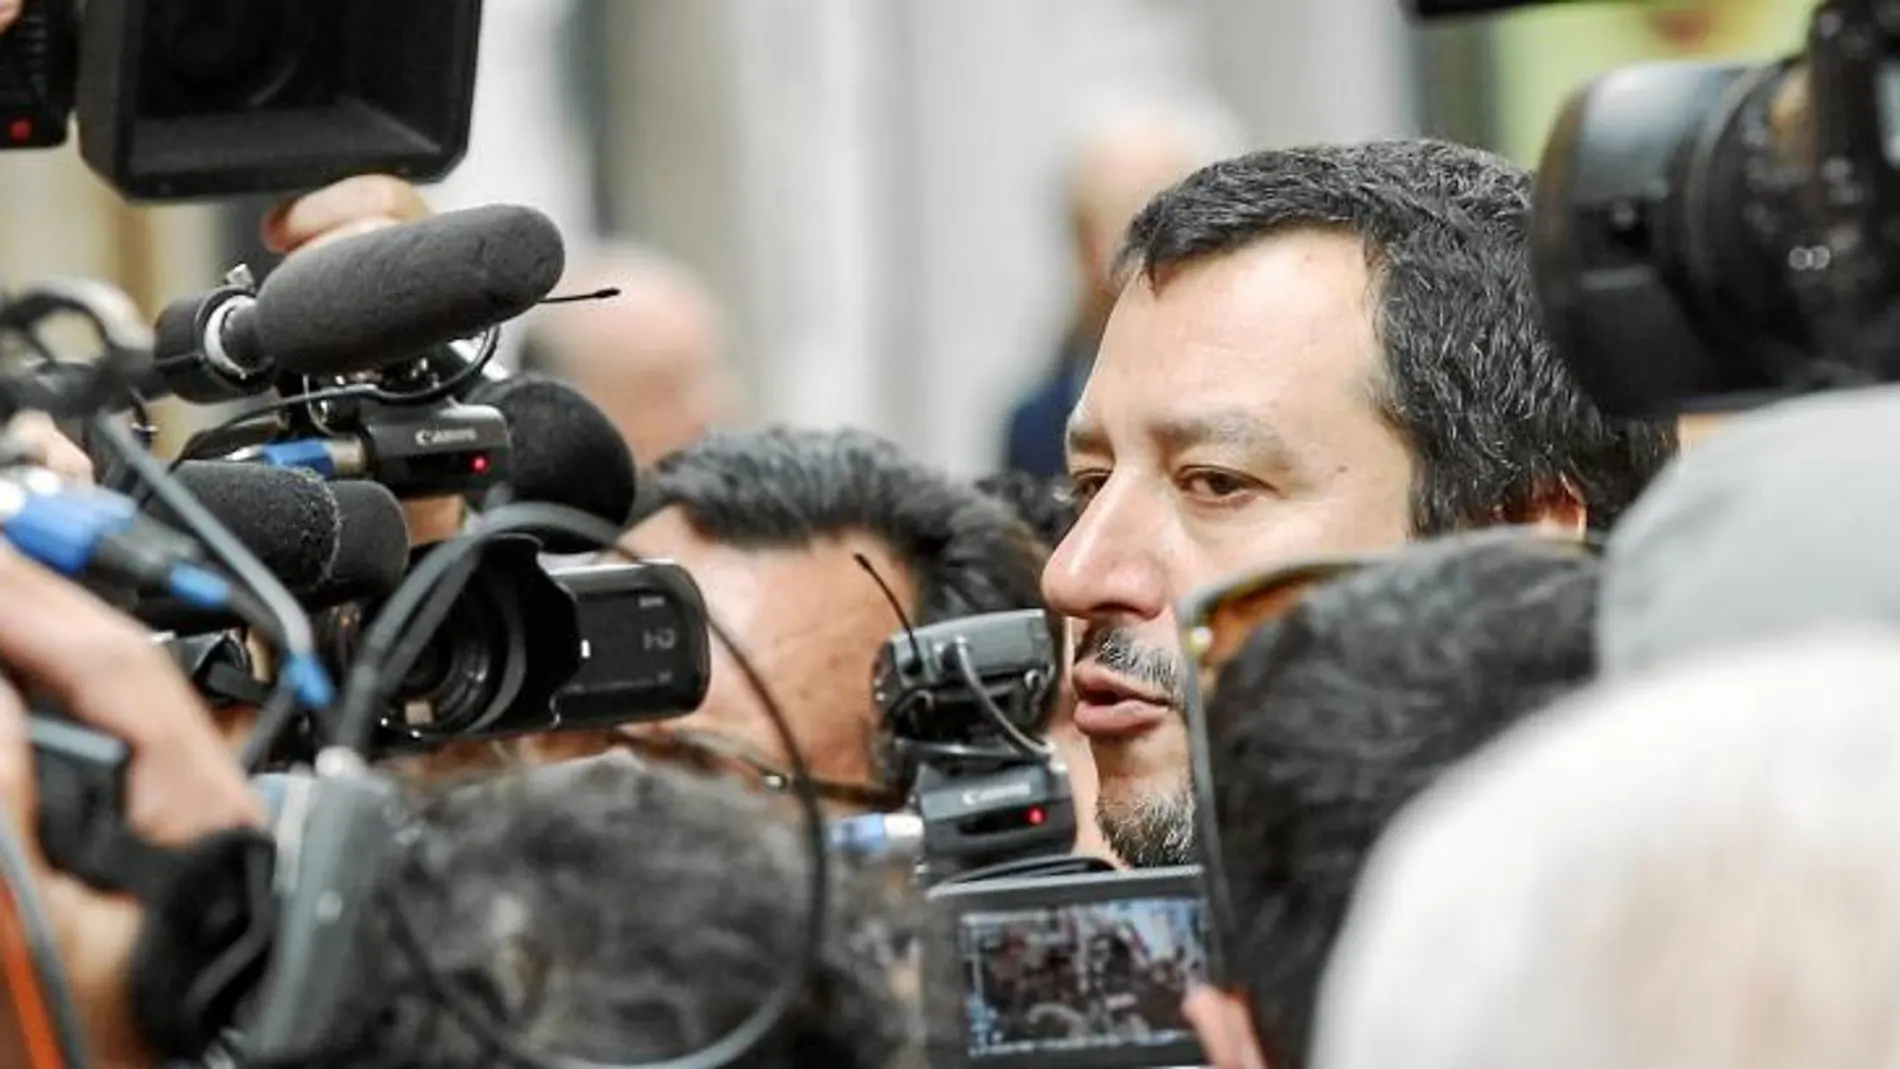 Salvini aprovechó ayer en Roma la atención mediática para clamar contra Mattarella y airear su retórica antisistema